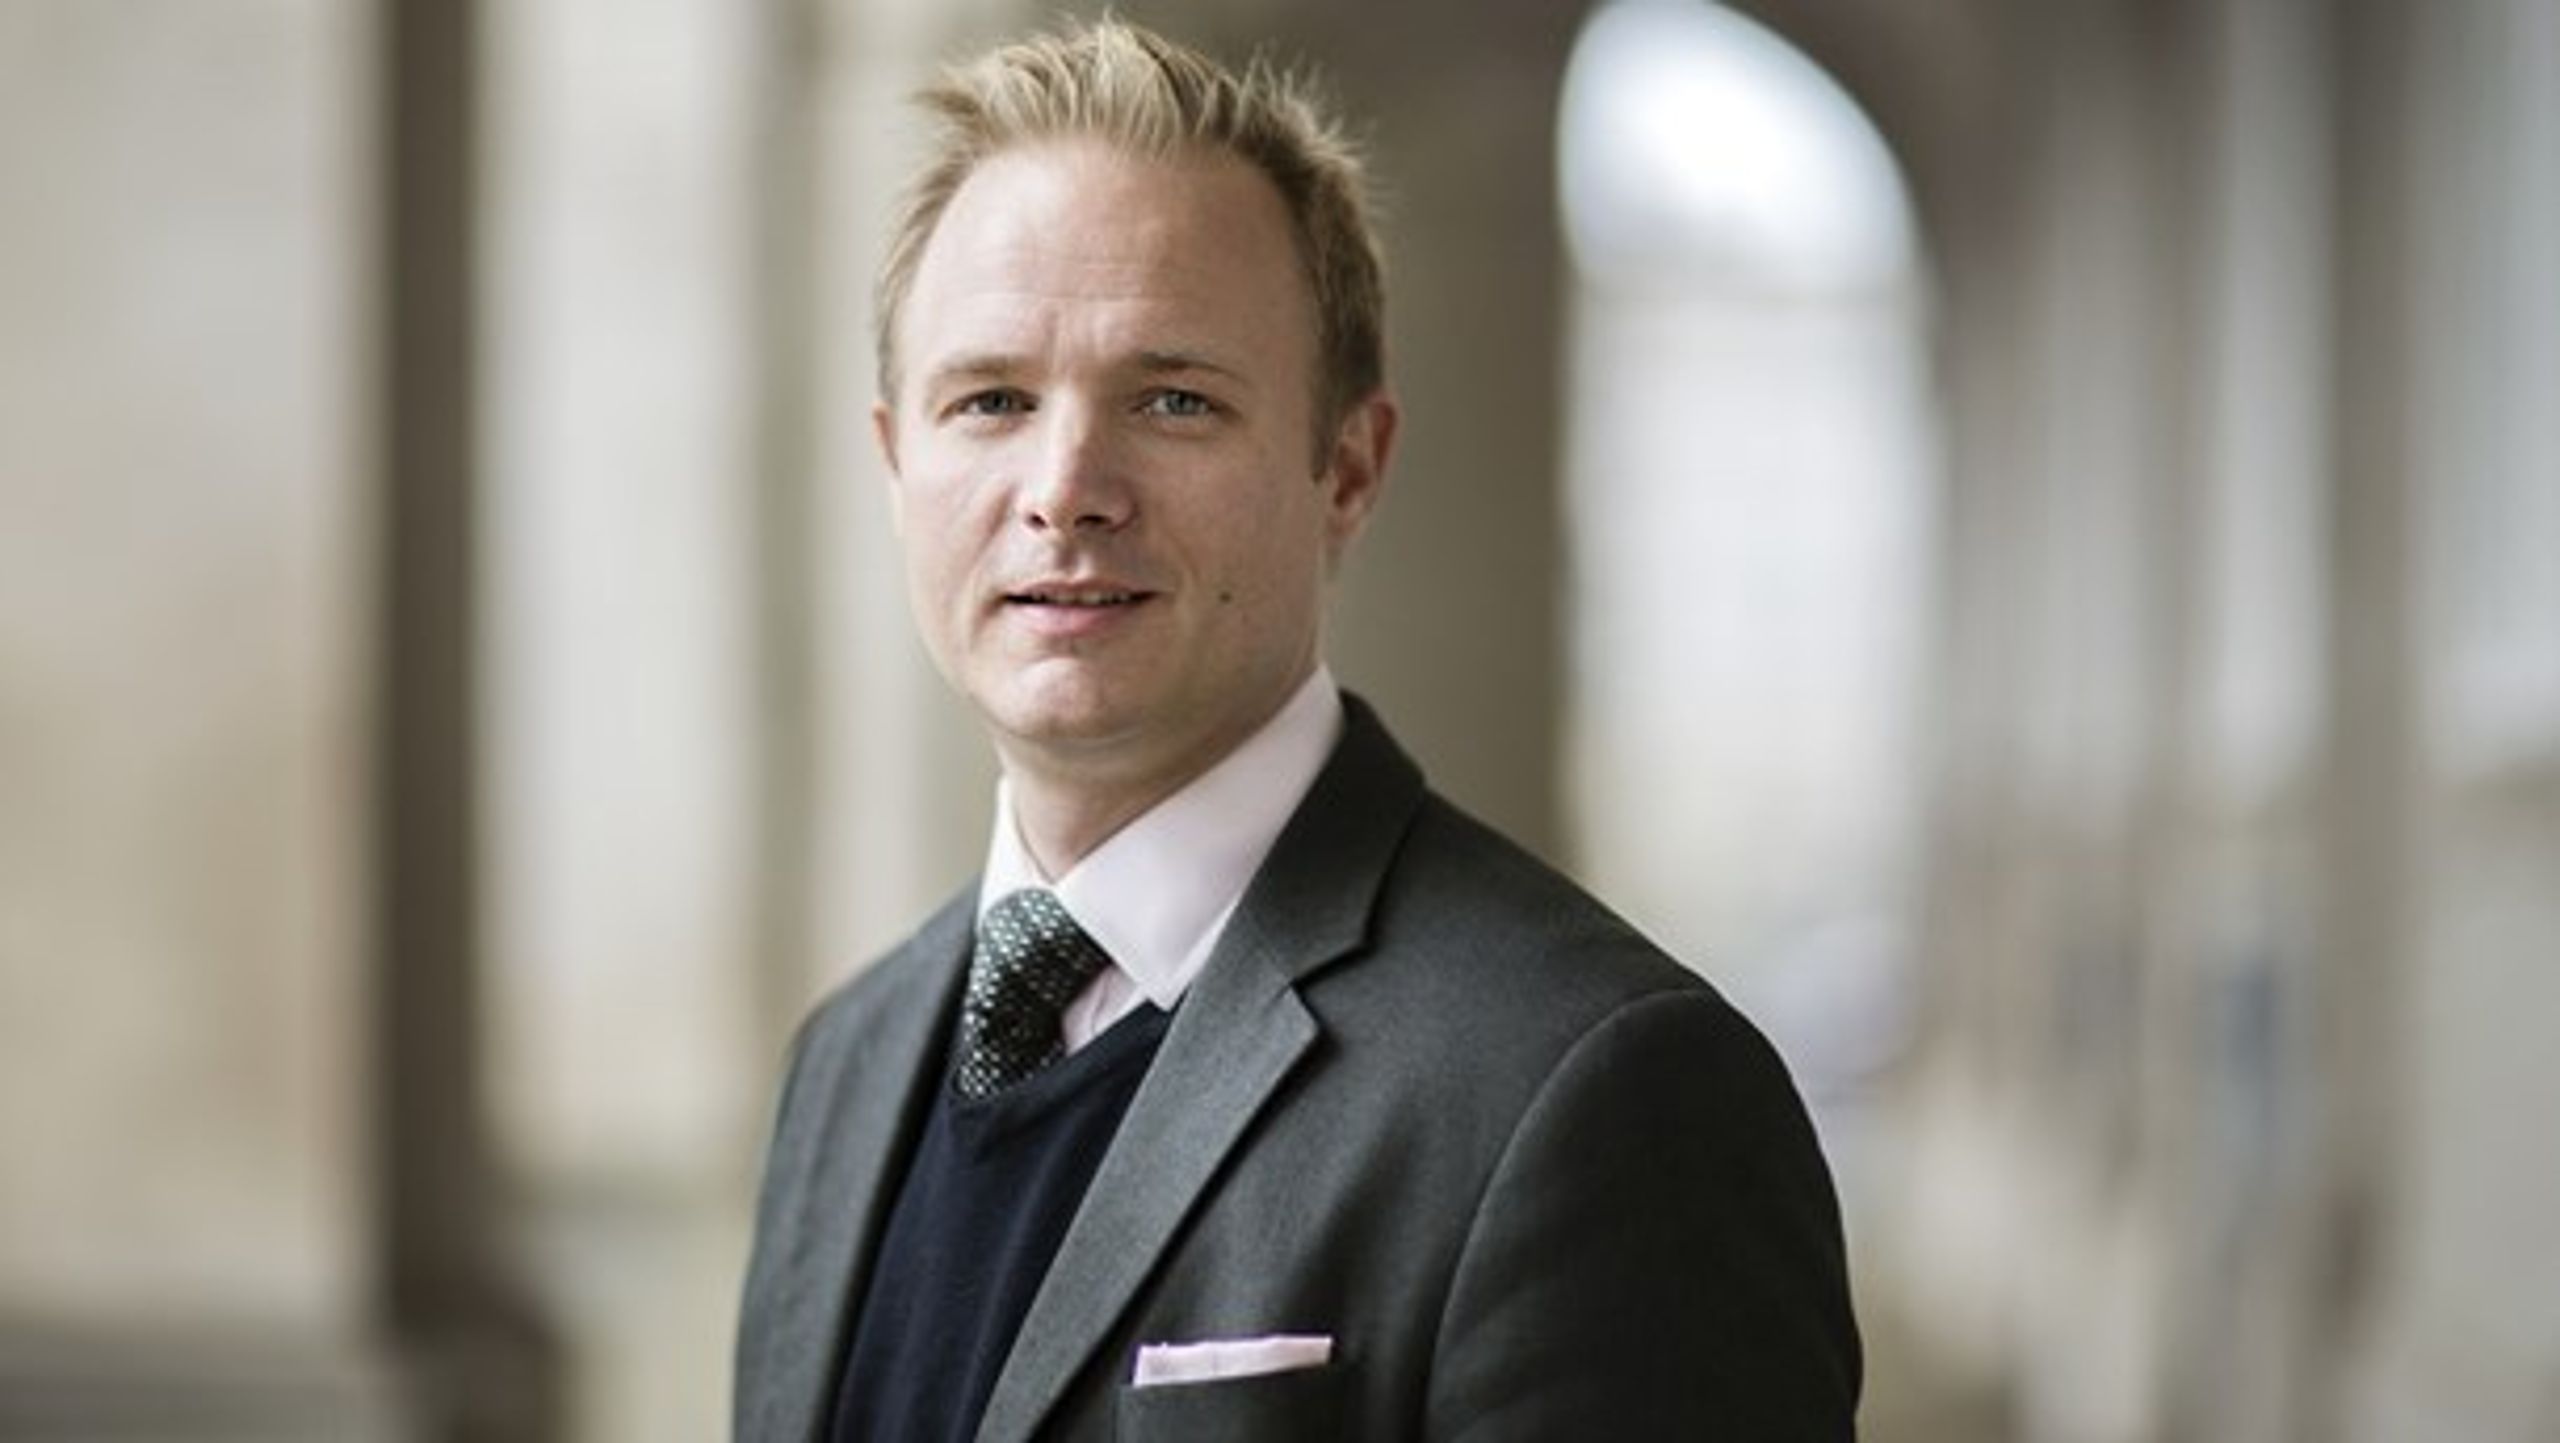 Der er ikke er nok fokus på lovkvalitet i Danmark, skriver Morten Jarlbæk Pedersen.